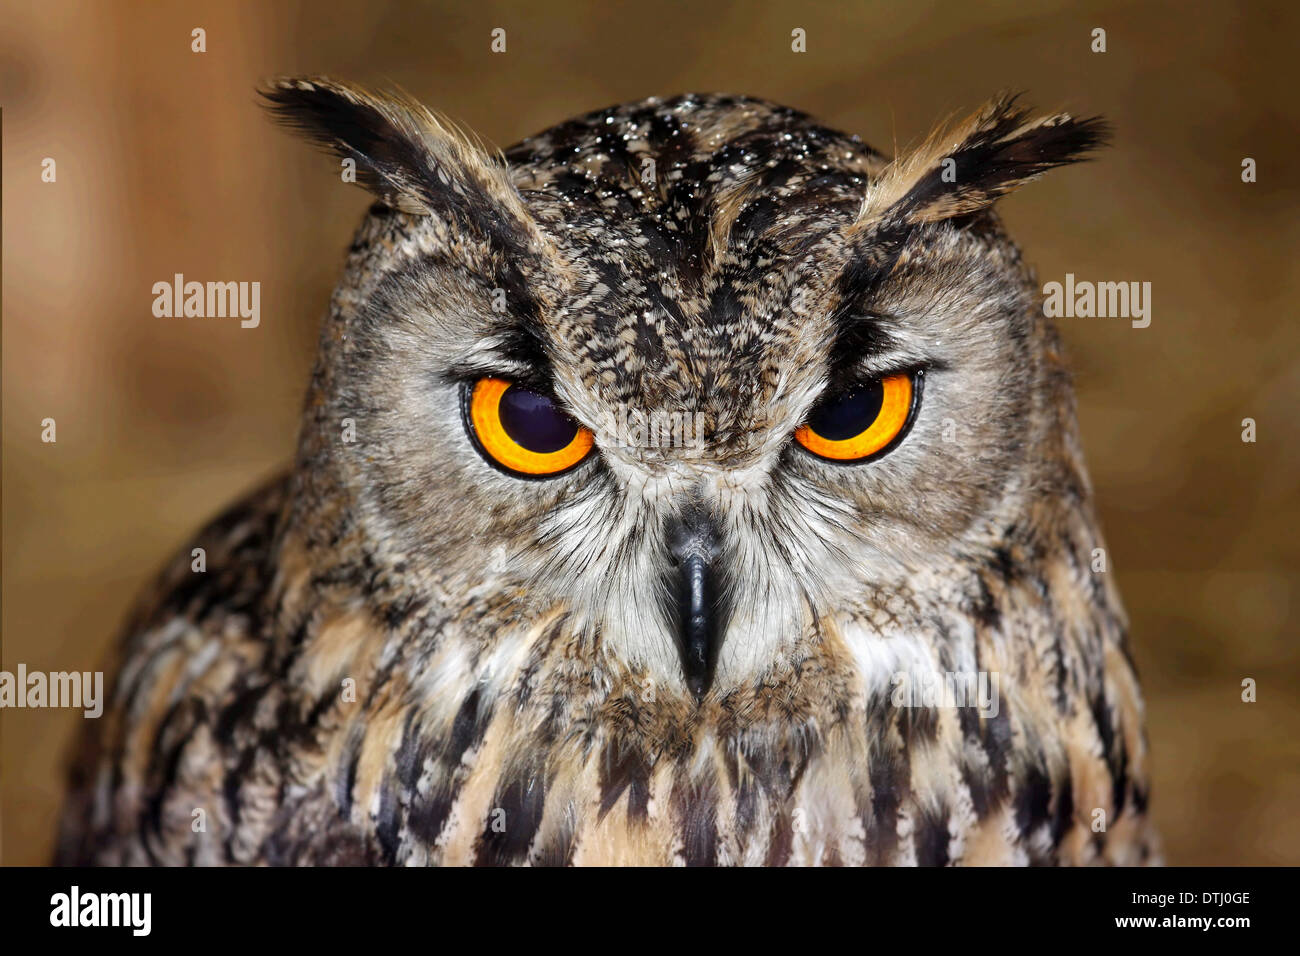 Eagle owl eurasienne très proche, détail visage Banque D'Images